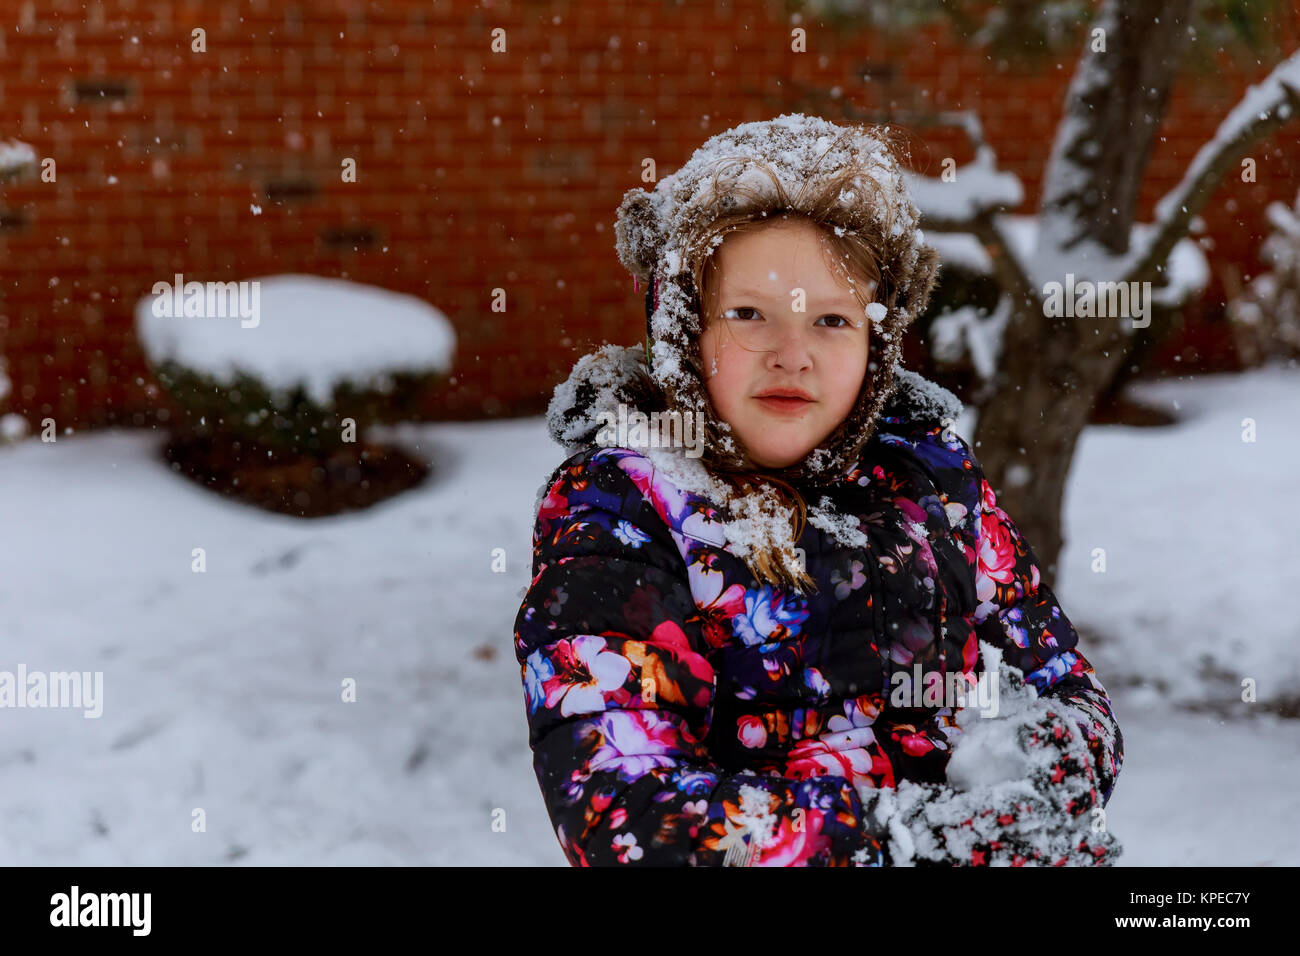 Glückliches lächelndes Mädchen in Rosa wirft snowin die Luft mit Snawflakes fliegen in alle Richtungen Stockfoto